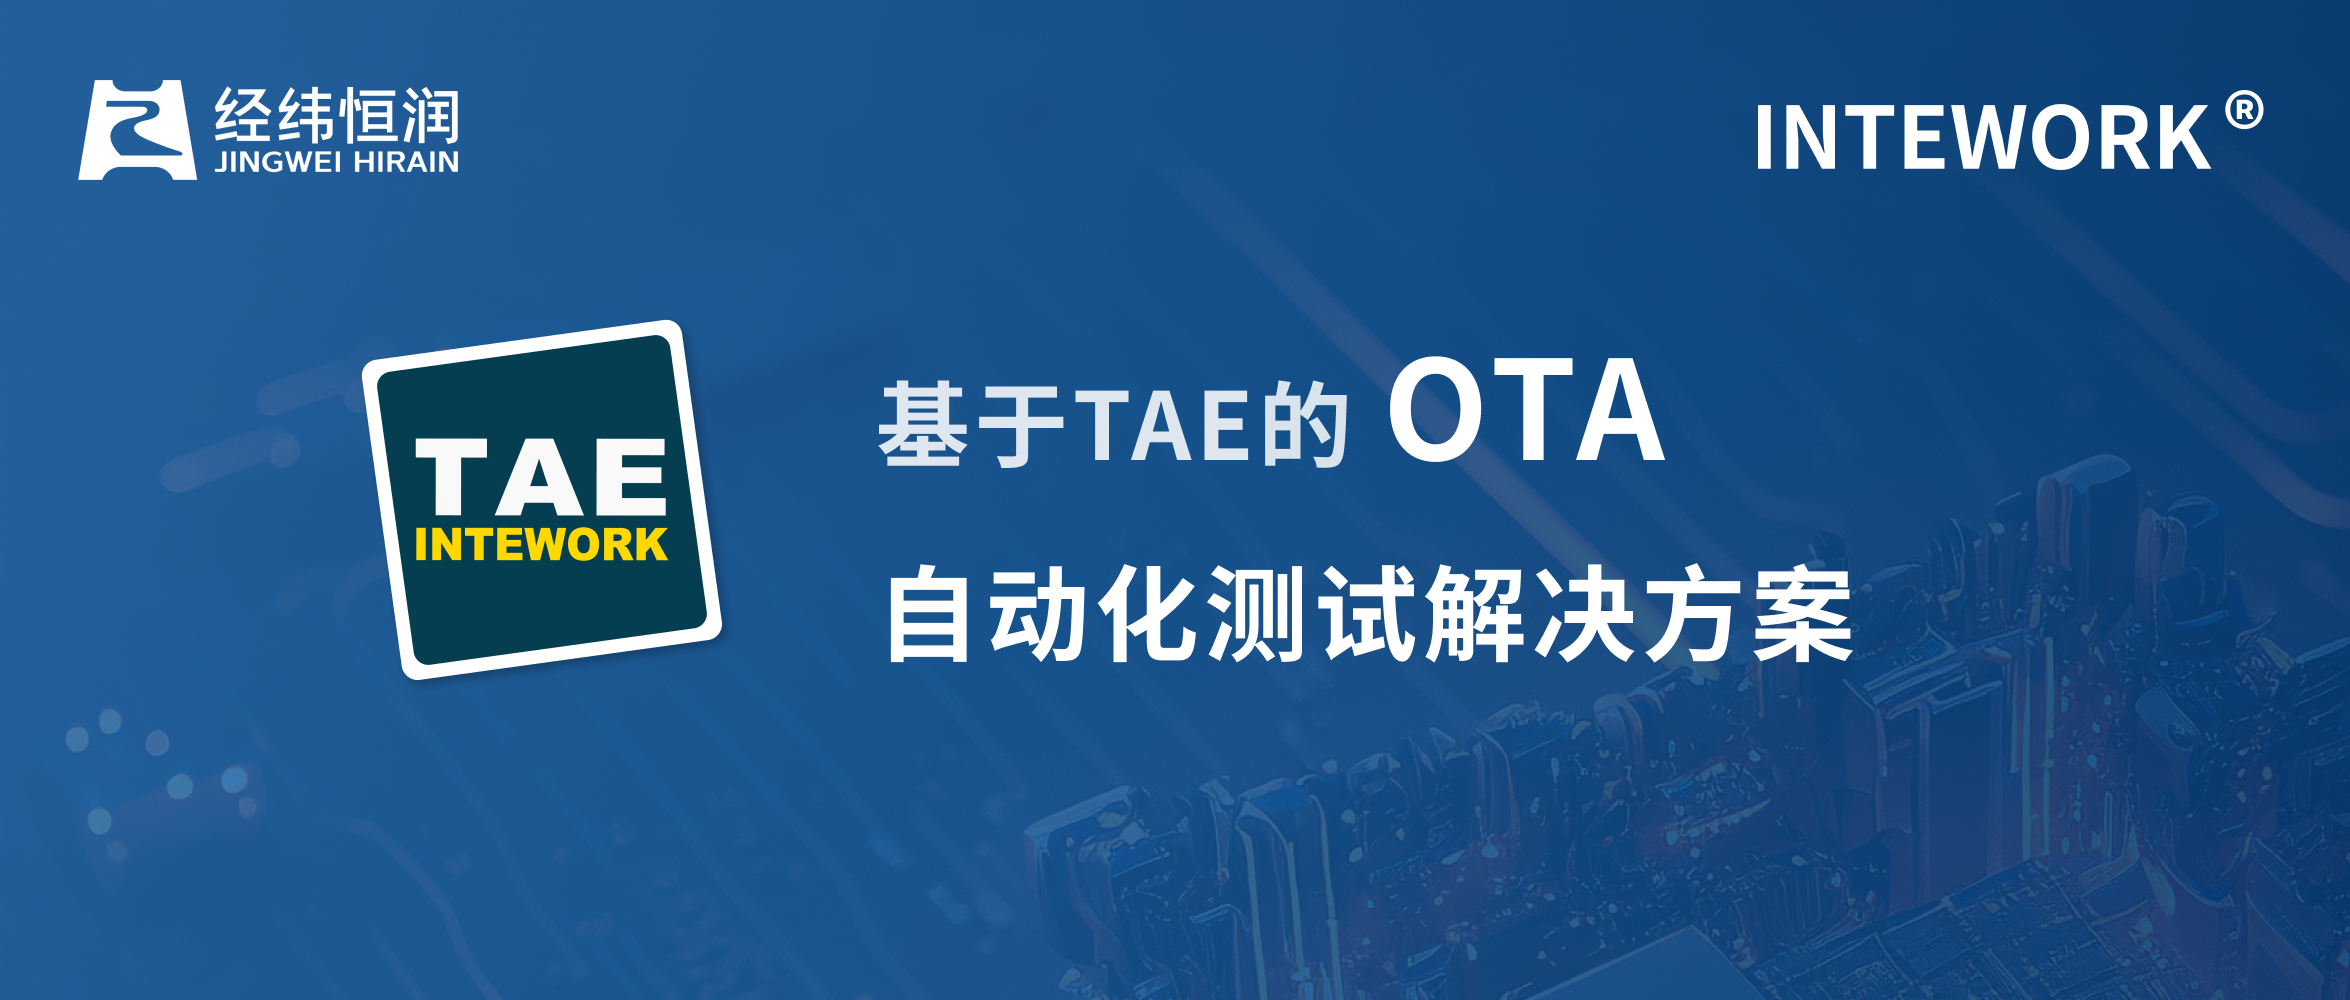 经纬恒润基于INTEWORK-TAE的OTA自动化测试解决方案